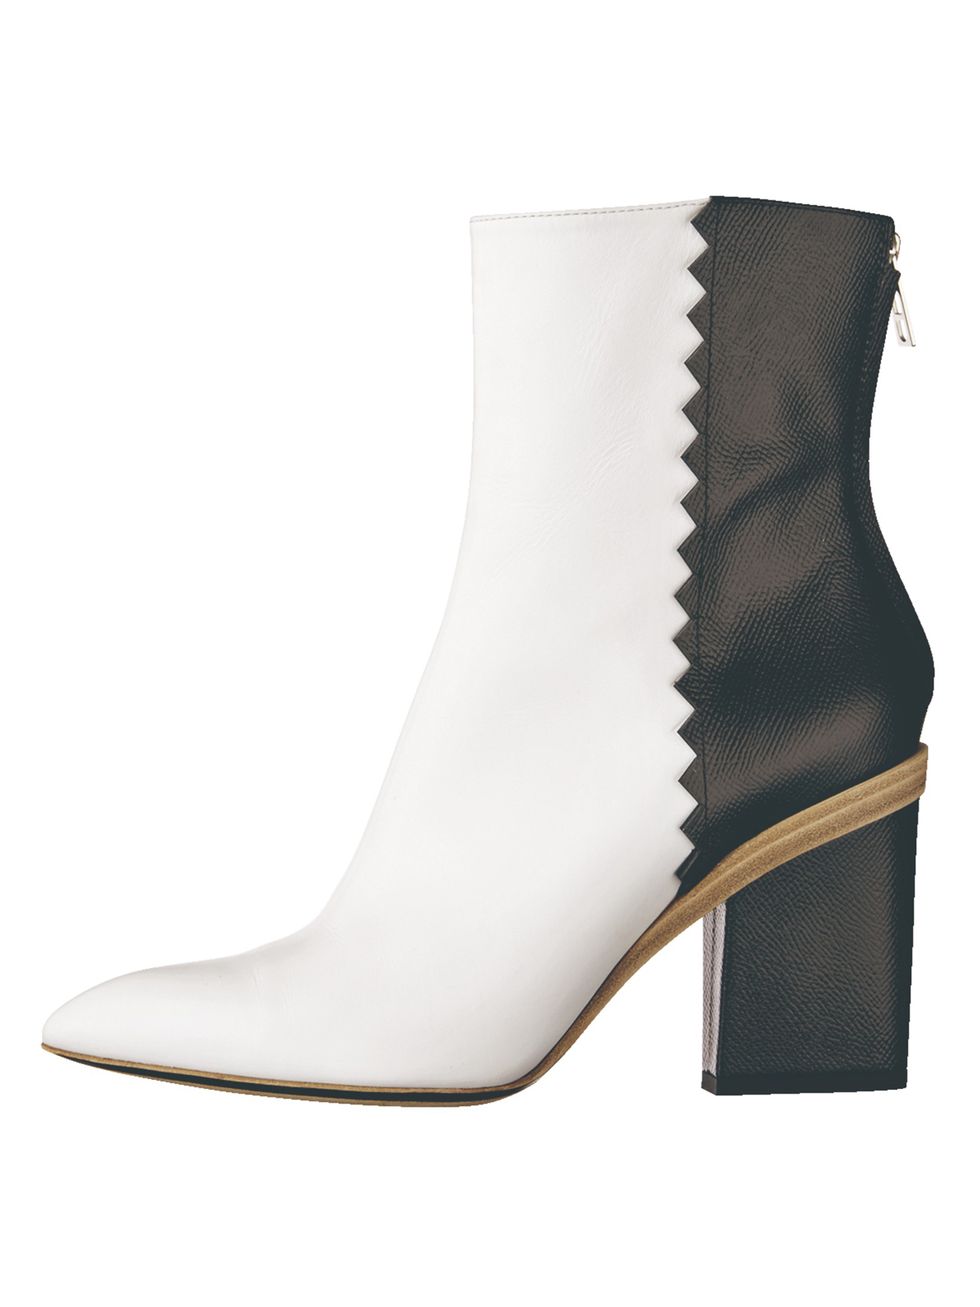 Footwear, Boot, Shoe, High heels, Beige, Leather, Durango boot, 